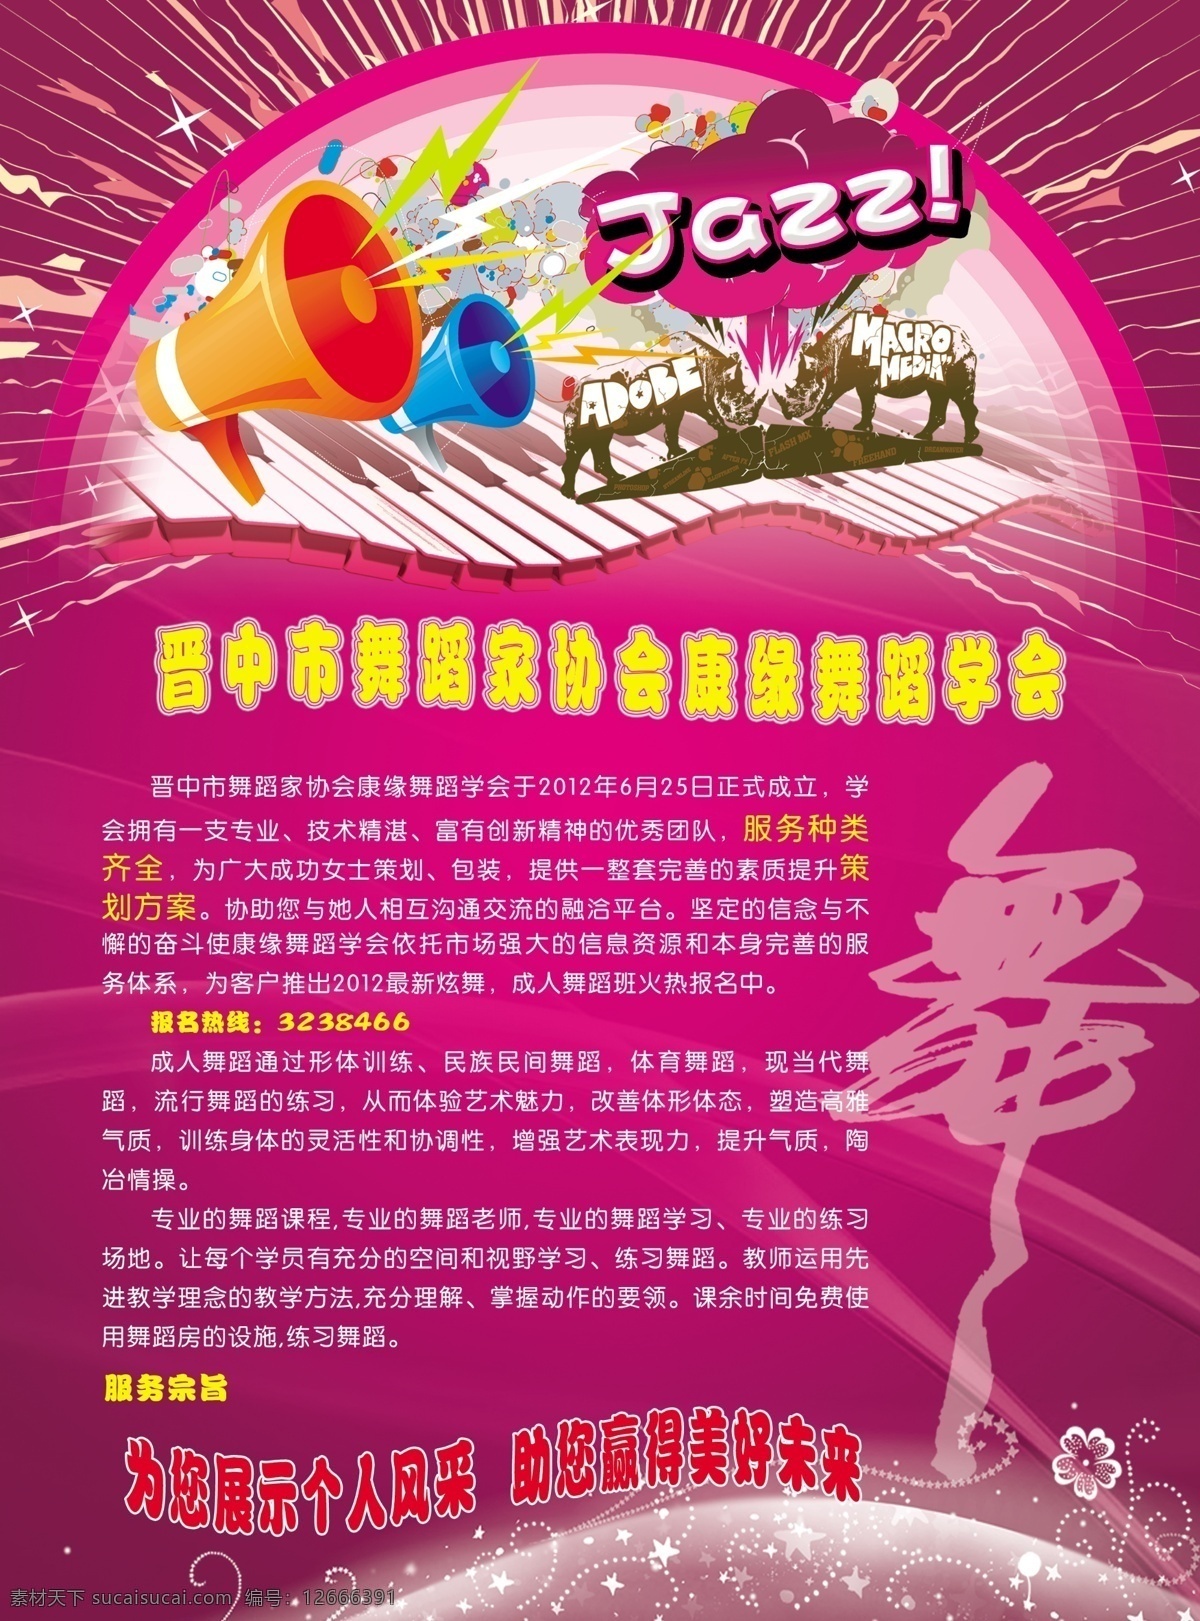 dm宣传单 jazz 广告设计模板 源文件 紫色的背景 舞蹈 宣传单 反面 橘色的喇叭 白色的钢琴键 蓝色的喇叭 绿色的闪电 白色的舞字 粉色的彩虹 紫色的云朵 psd源文件